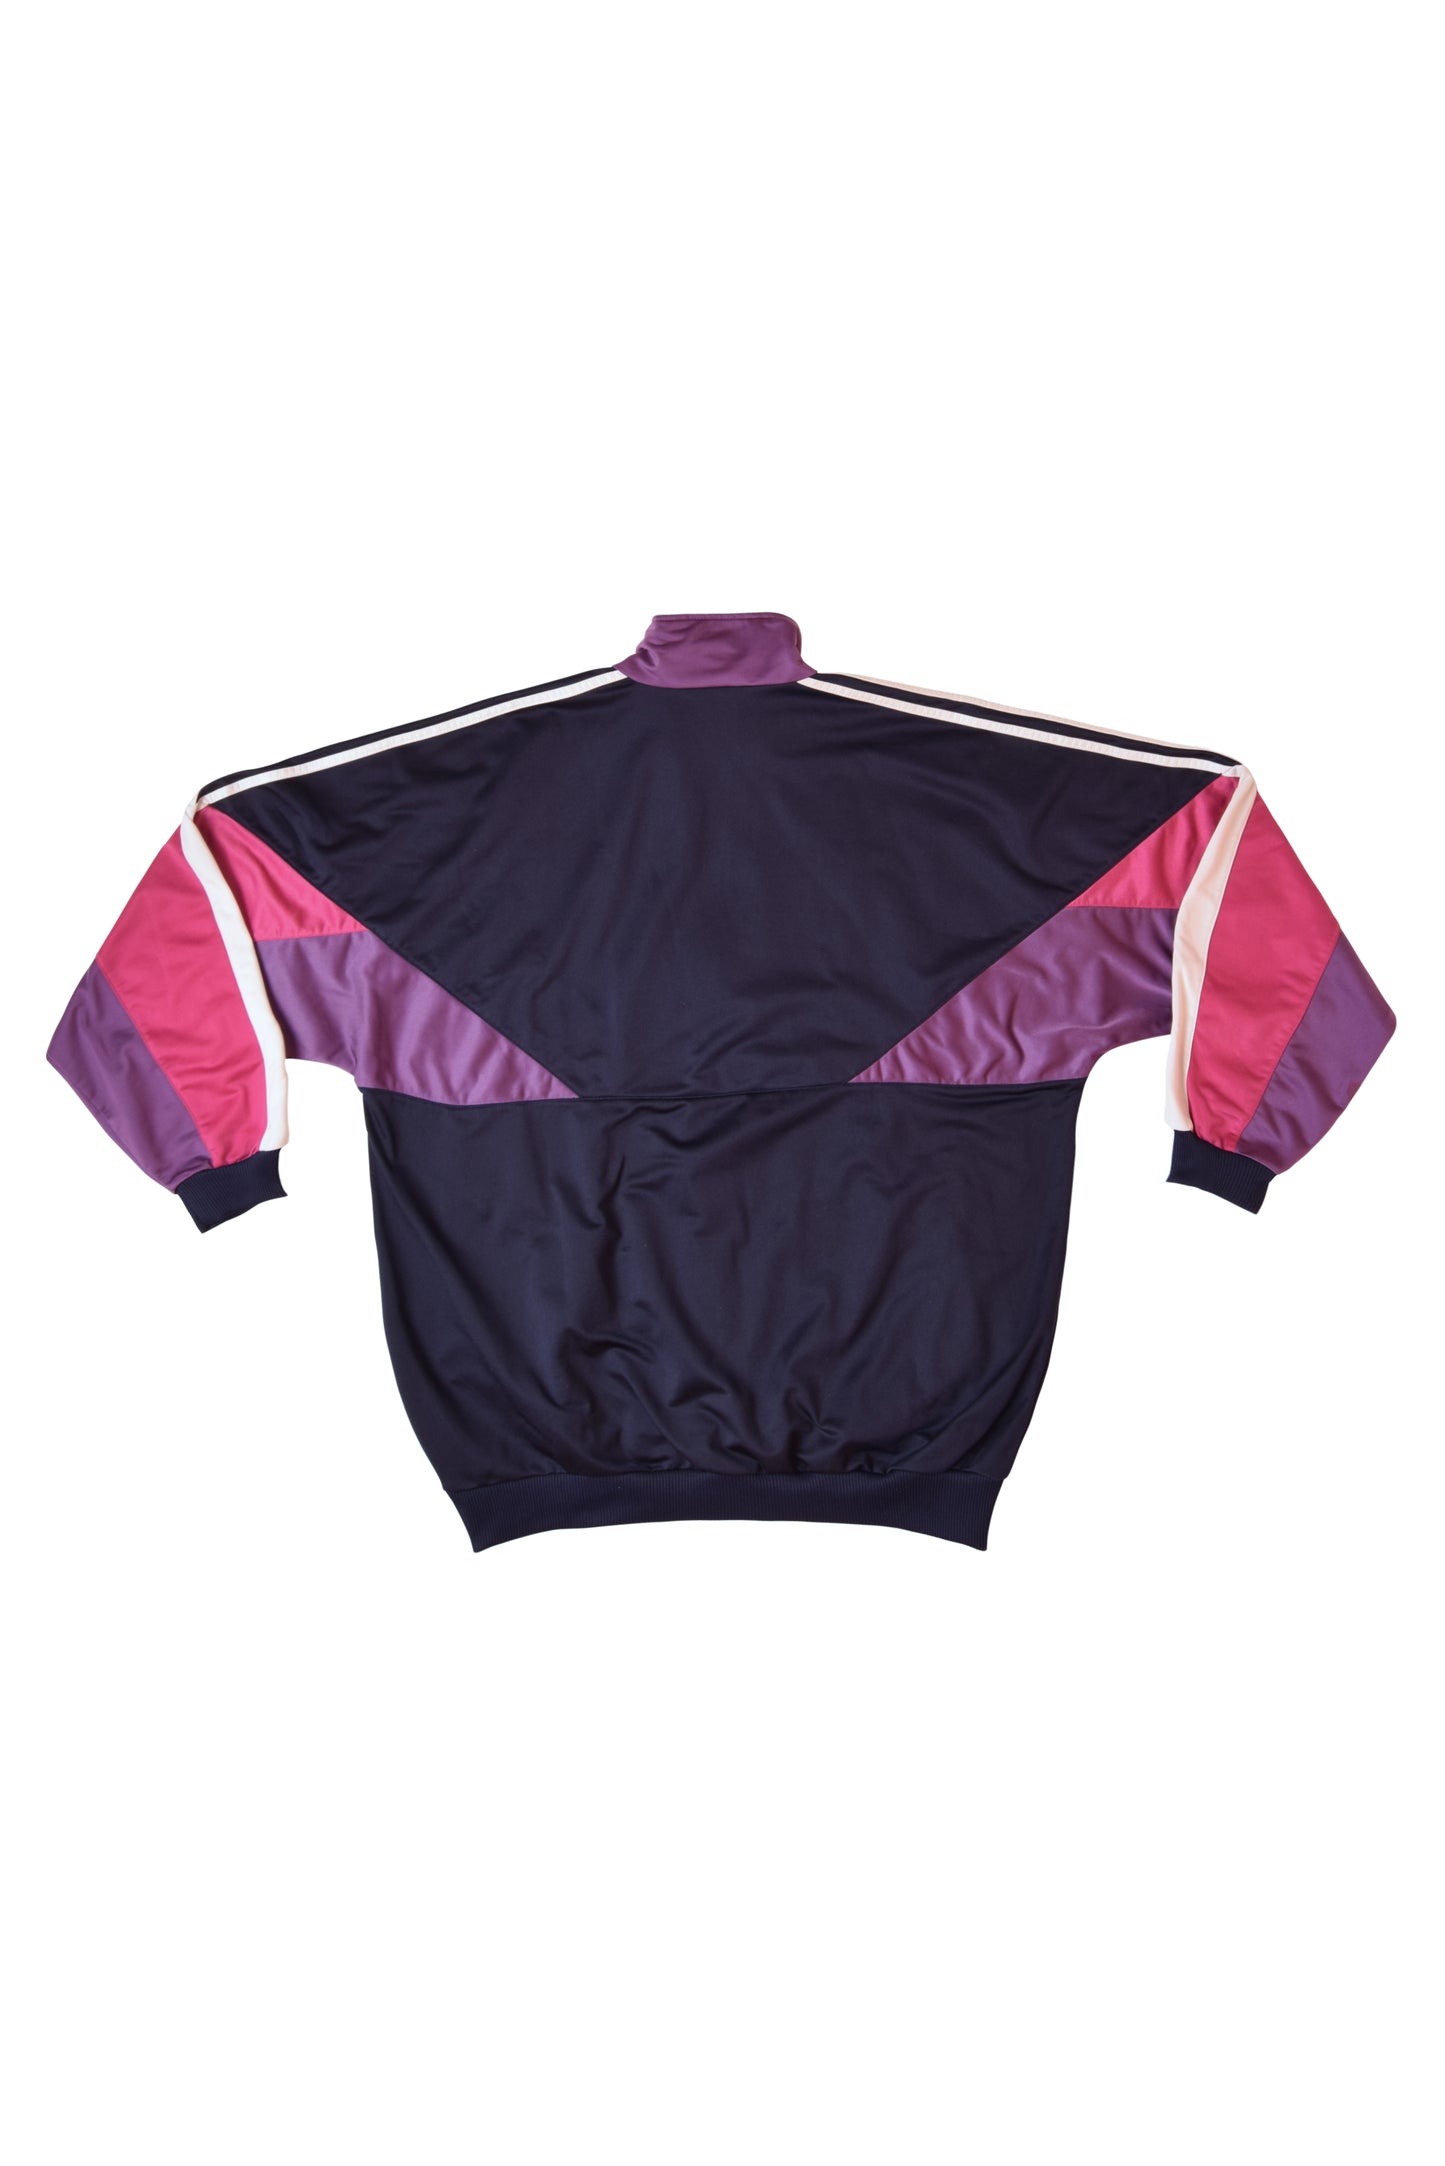 Vintage 90's Adidas Track Top / Jacket 